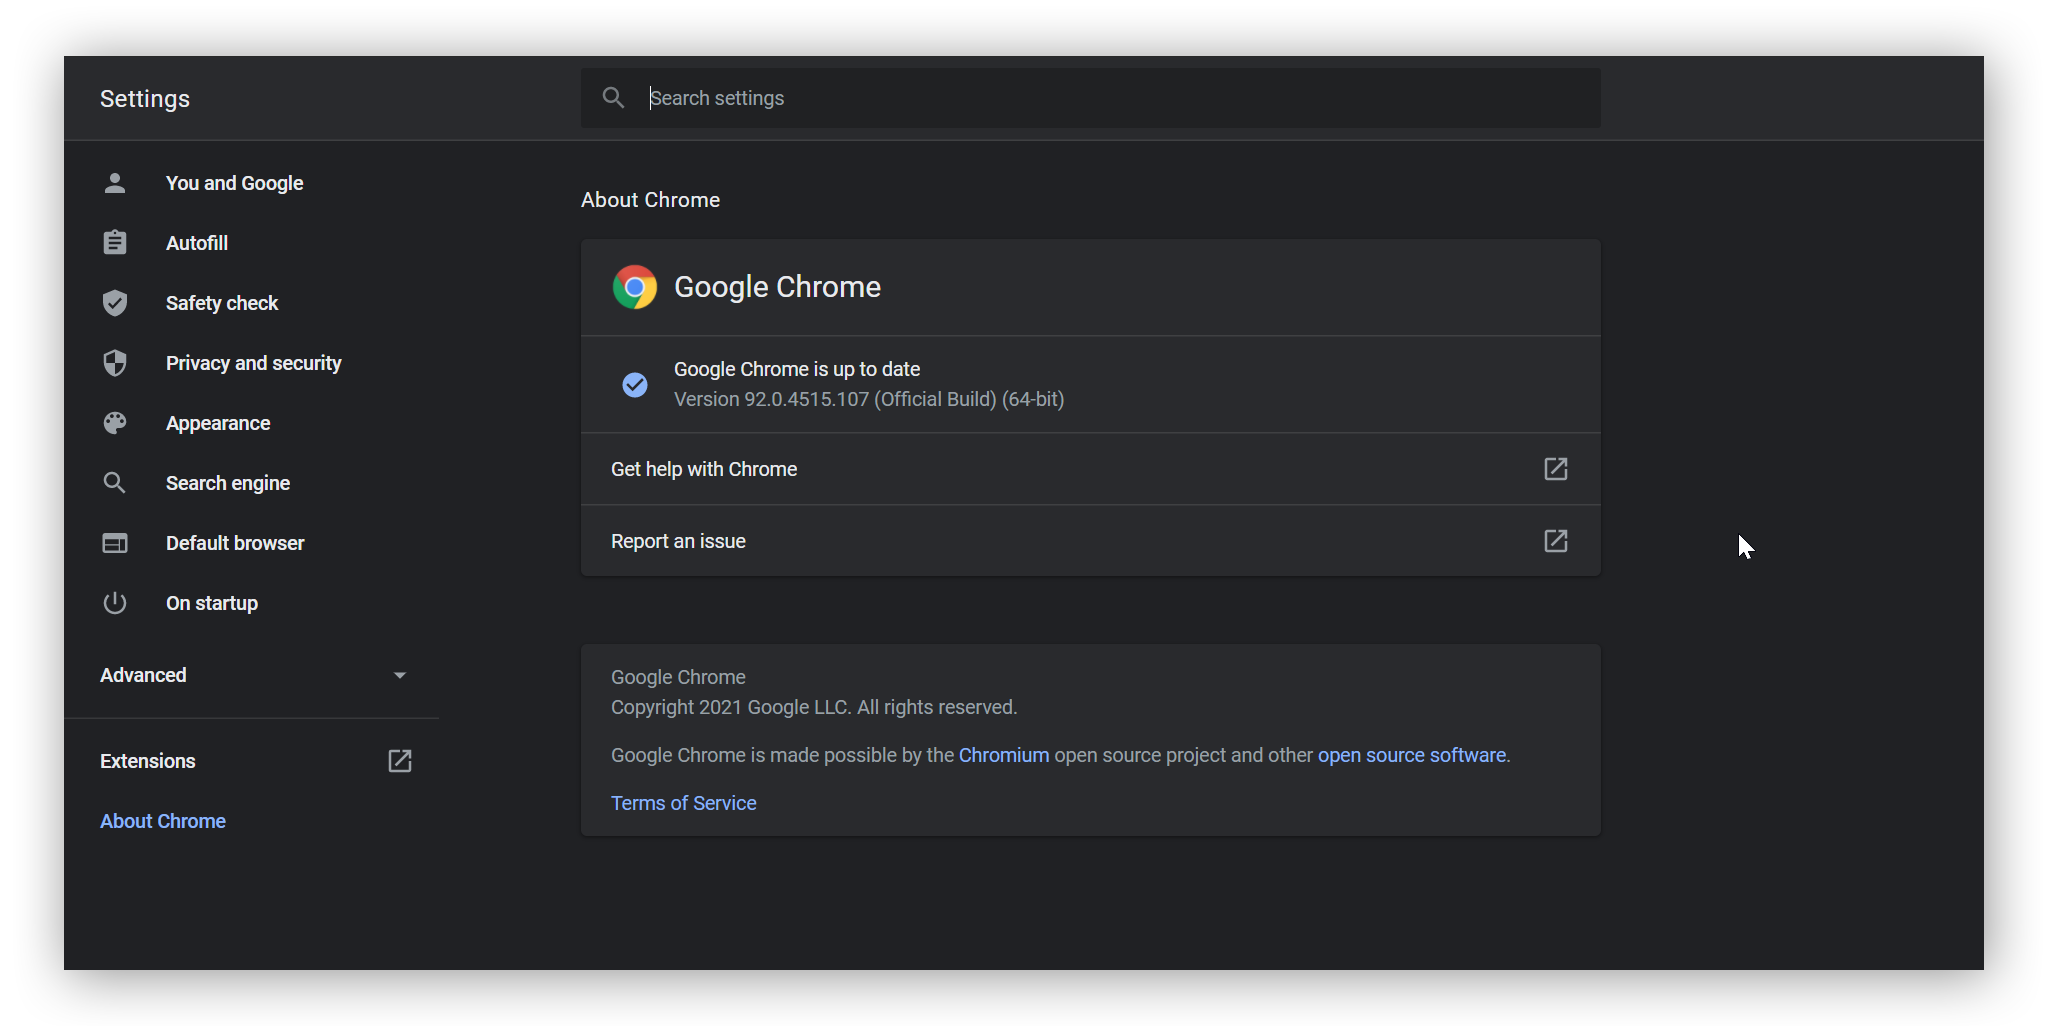 A configuração Sobre o Google Chrome exibida, mostrando que o Google Chrome está atualizado.